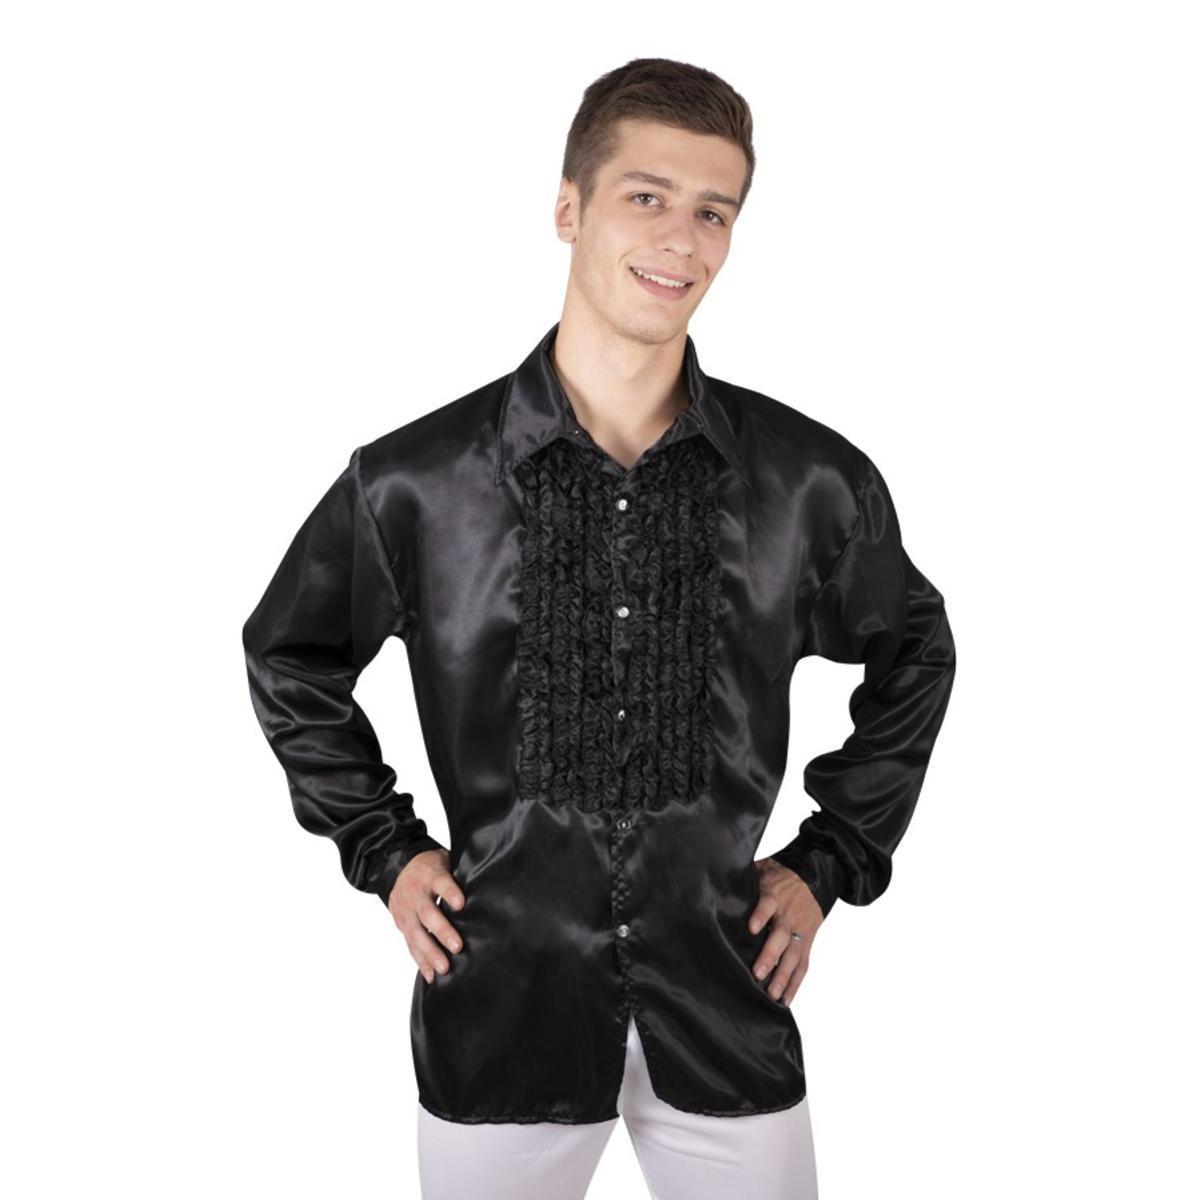 Chemise disco à froufrous pour homme - Taille S/M - L 40 x l 30 cm - Noir - PTIT CLOWN